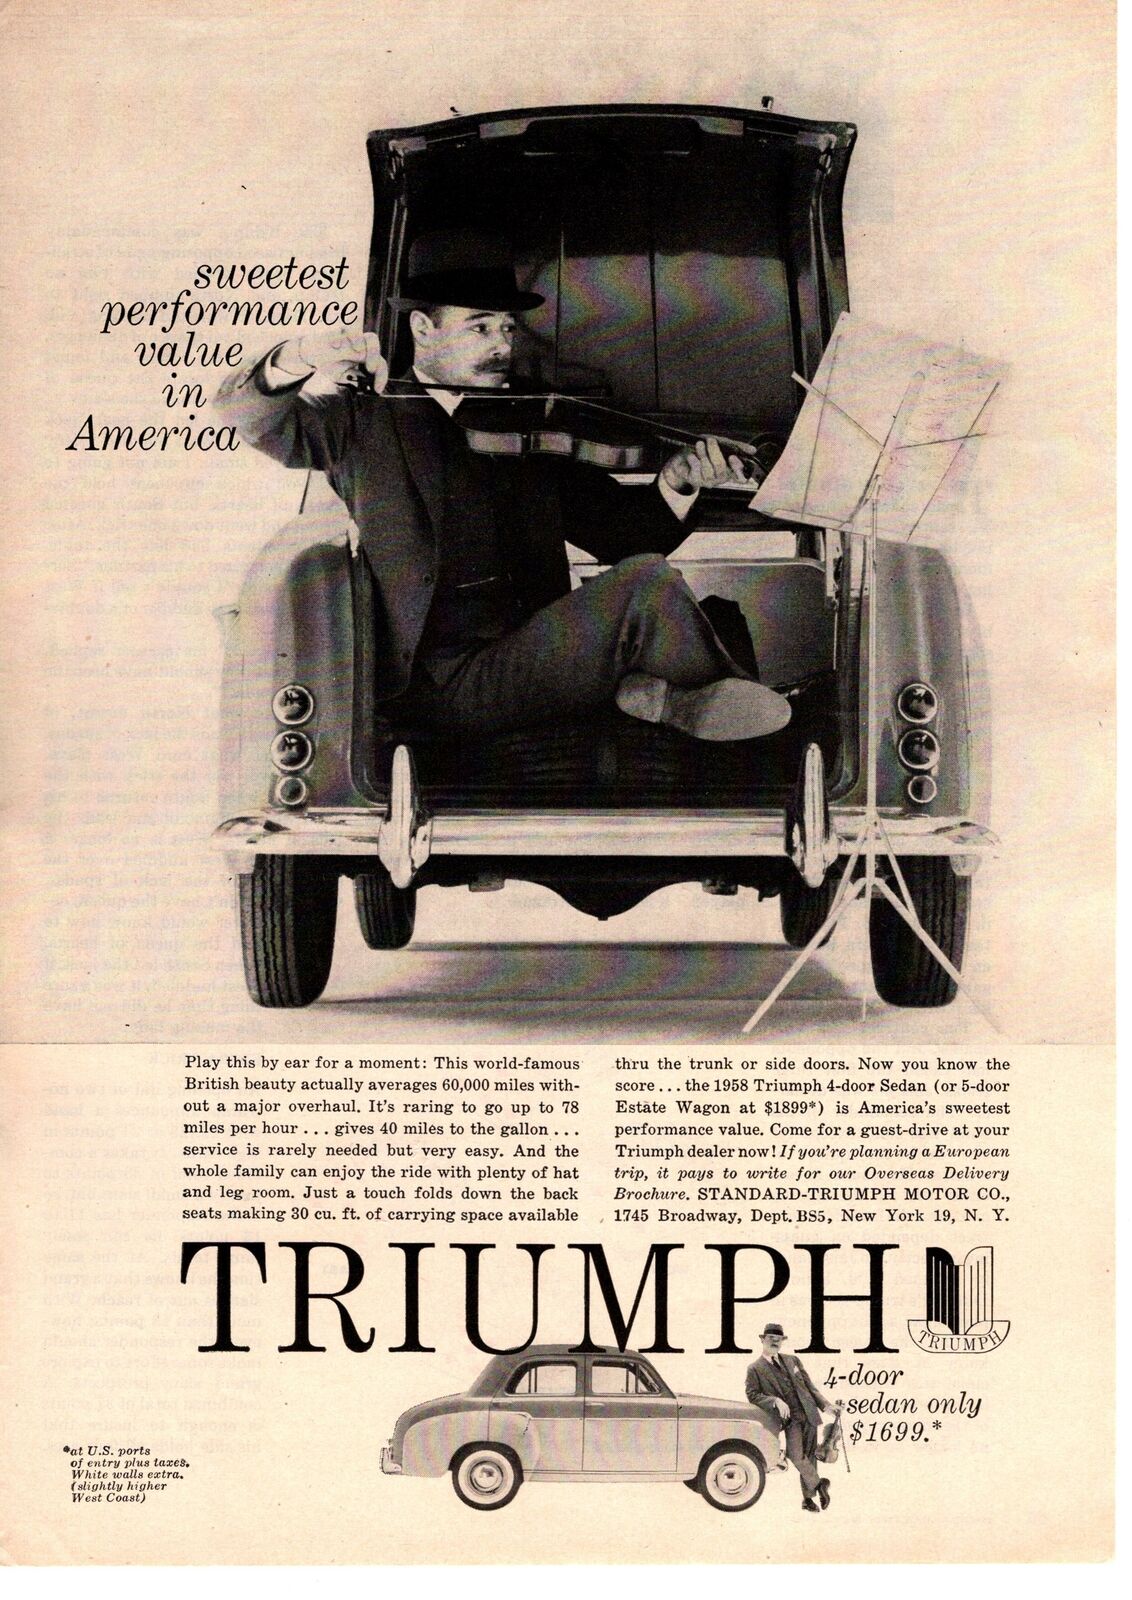 1958 Standard Triumph Motor Co. 4-door Sedan 5-door Estate Wagon Violin Print Ad